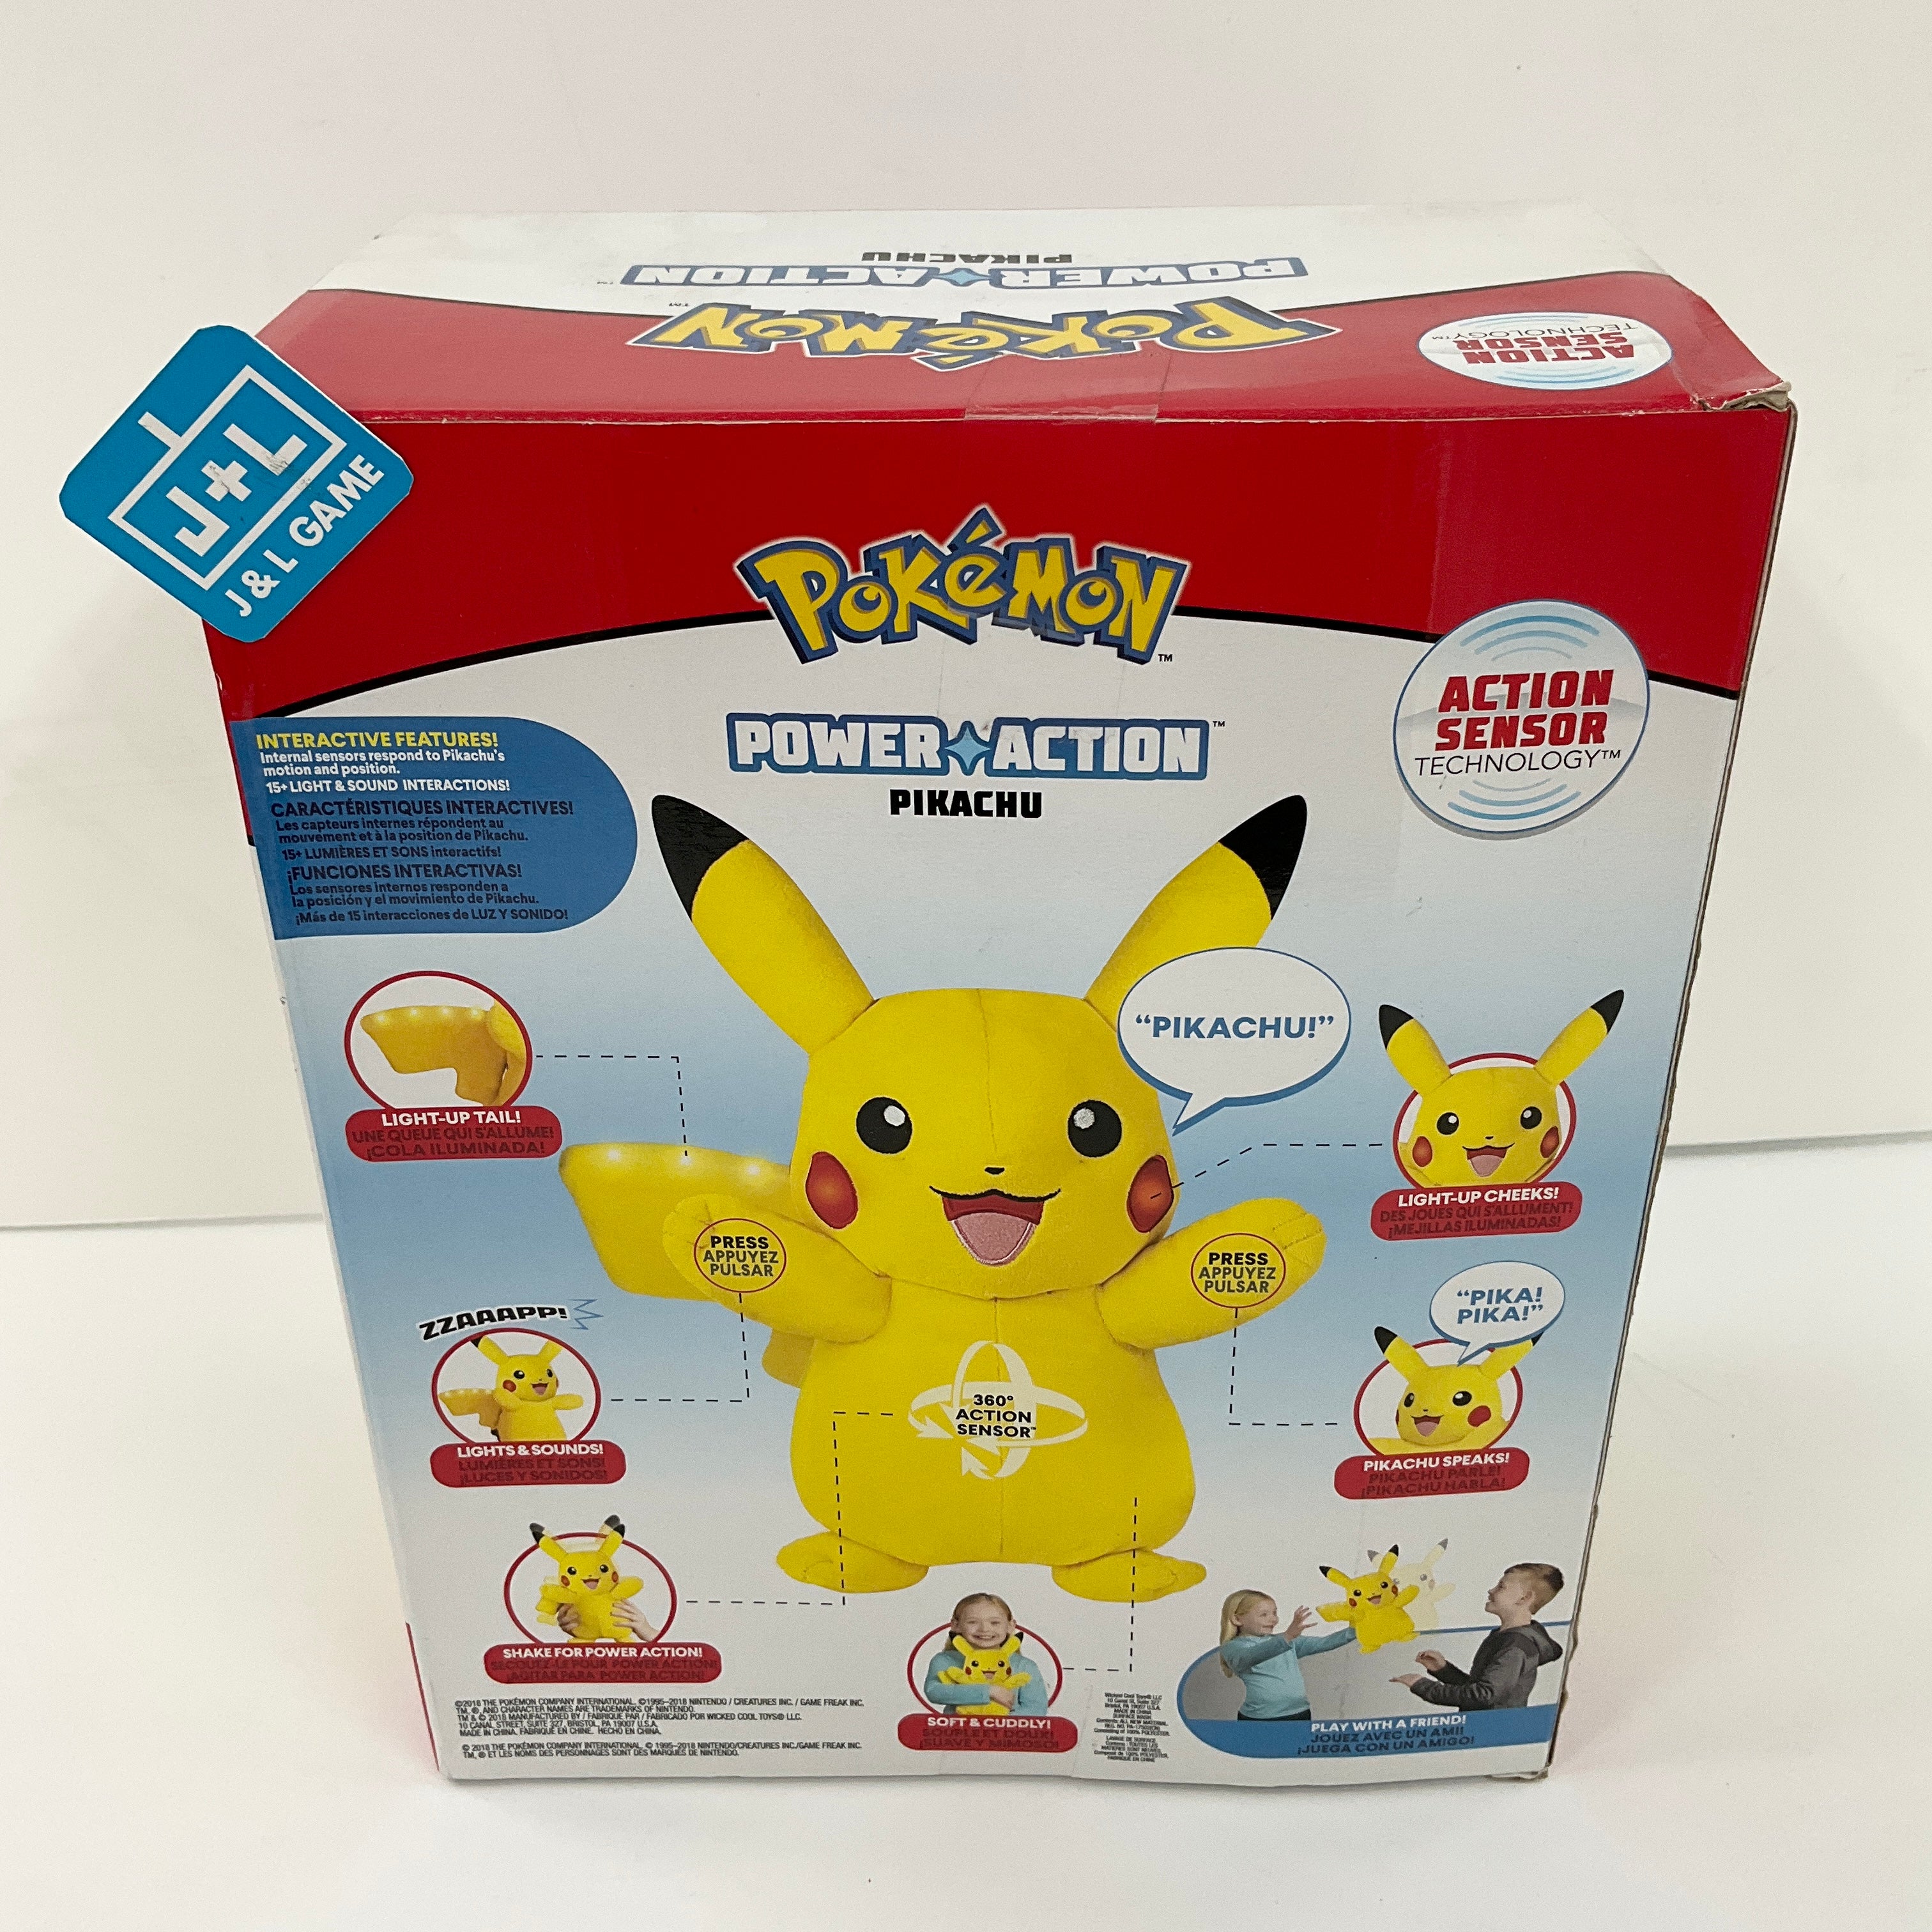 Pokemon Power Action Pikachu Plush - Toys Toy Mega   